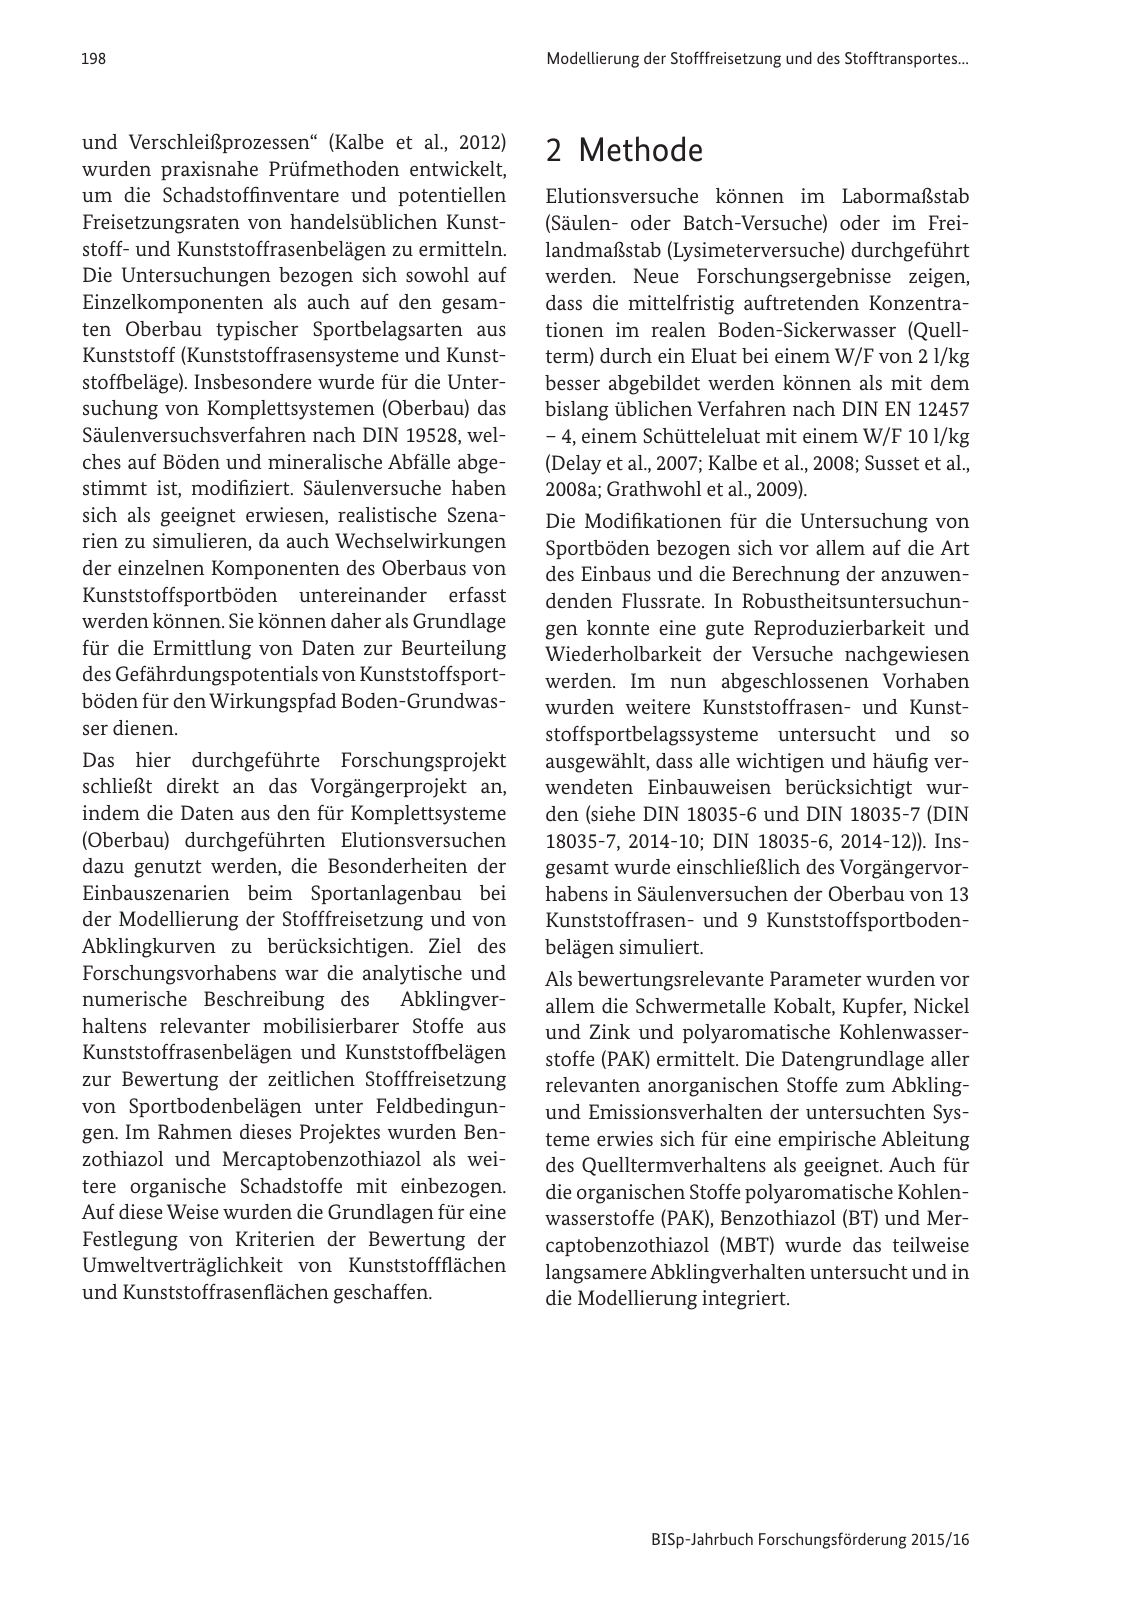 Vorschau BISp-Jahrbuch Forschungsförderung 2015/16 Seite 200